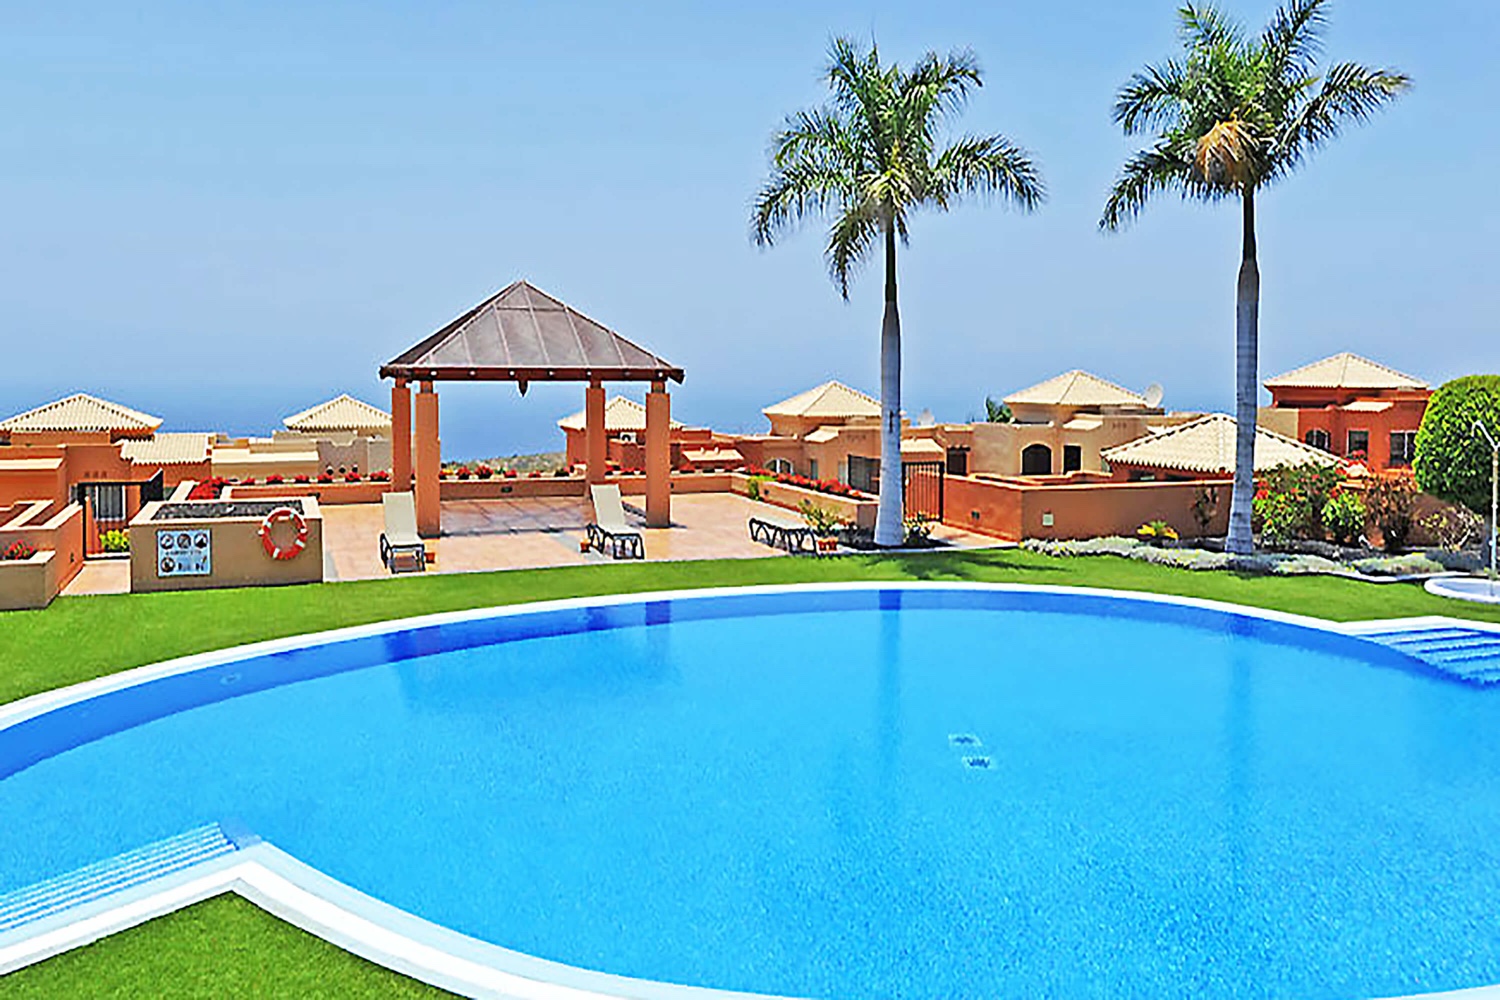 Huizen in het zonnige zuiden van het eiland Tenerife, met een groot gemeenschappelijk zwembad en dichtbij de golfbaan en de stranden van Costa Adeje